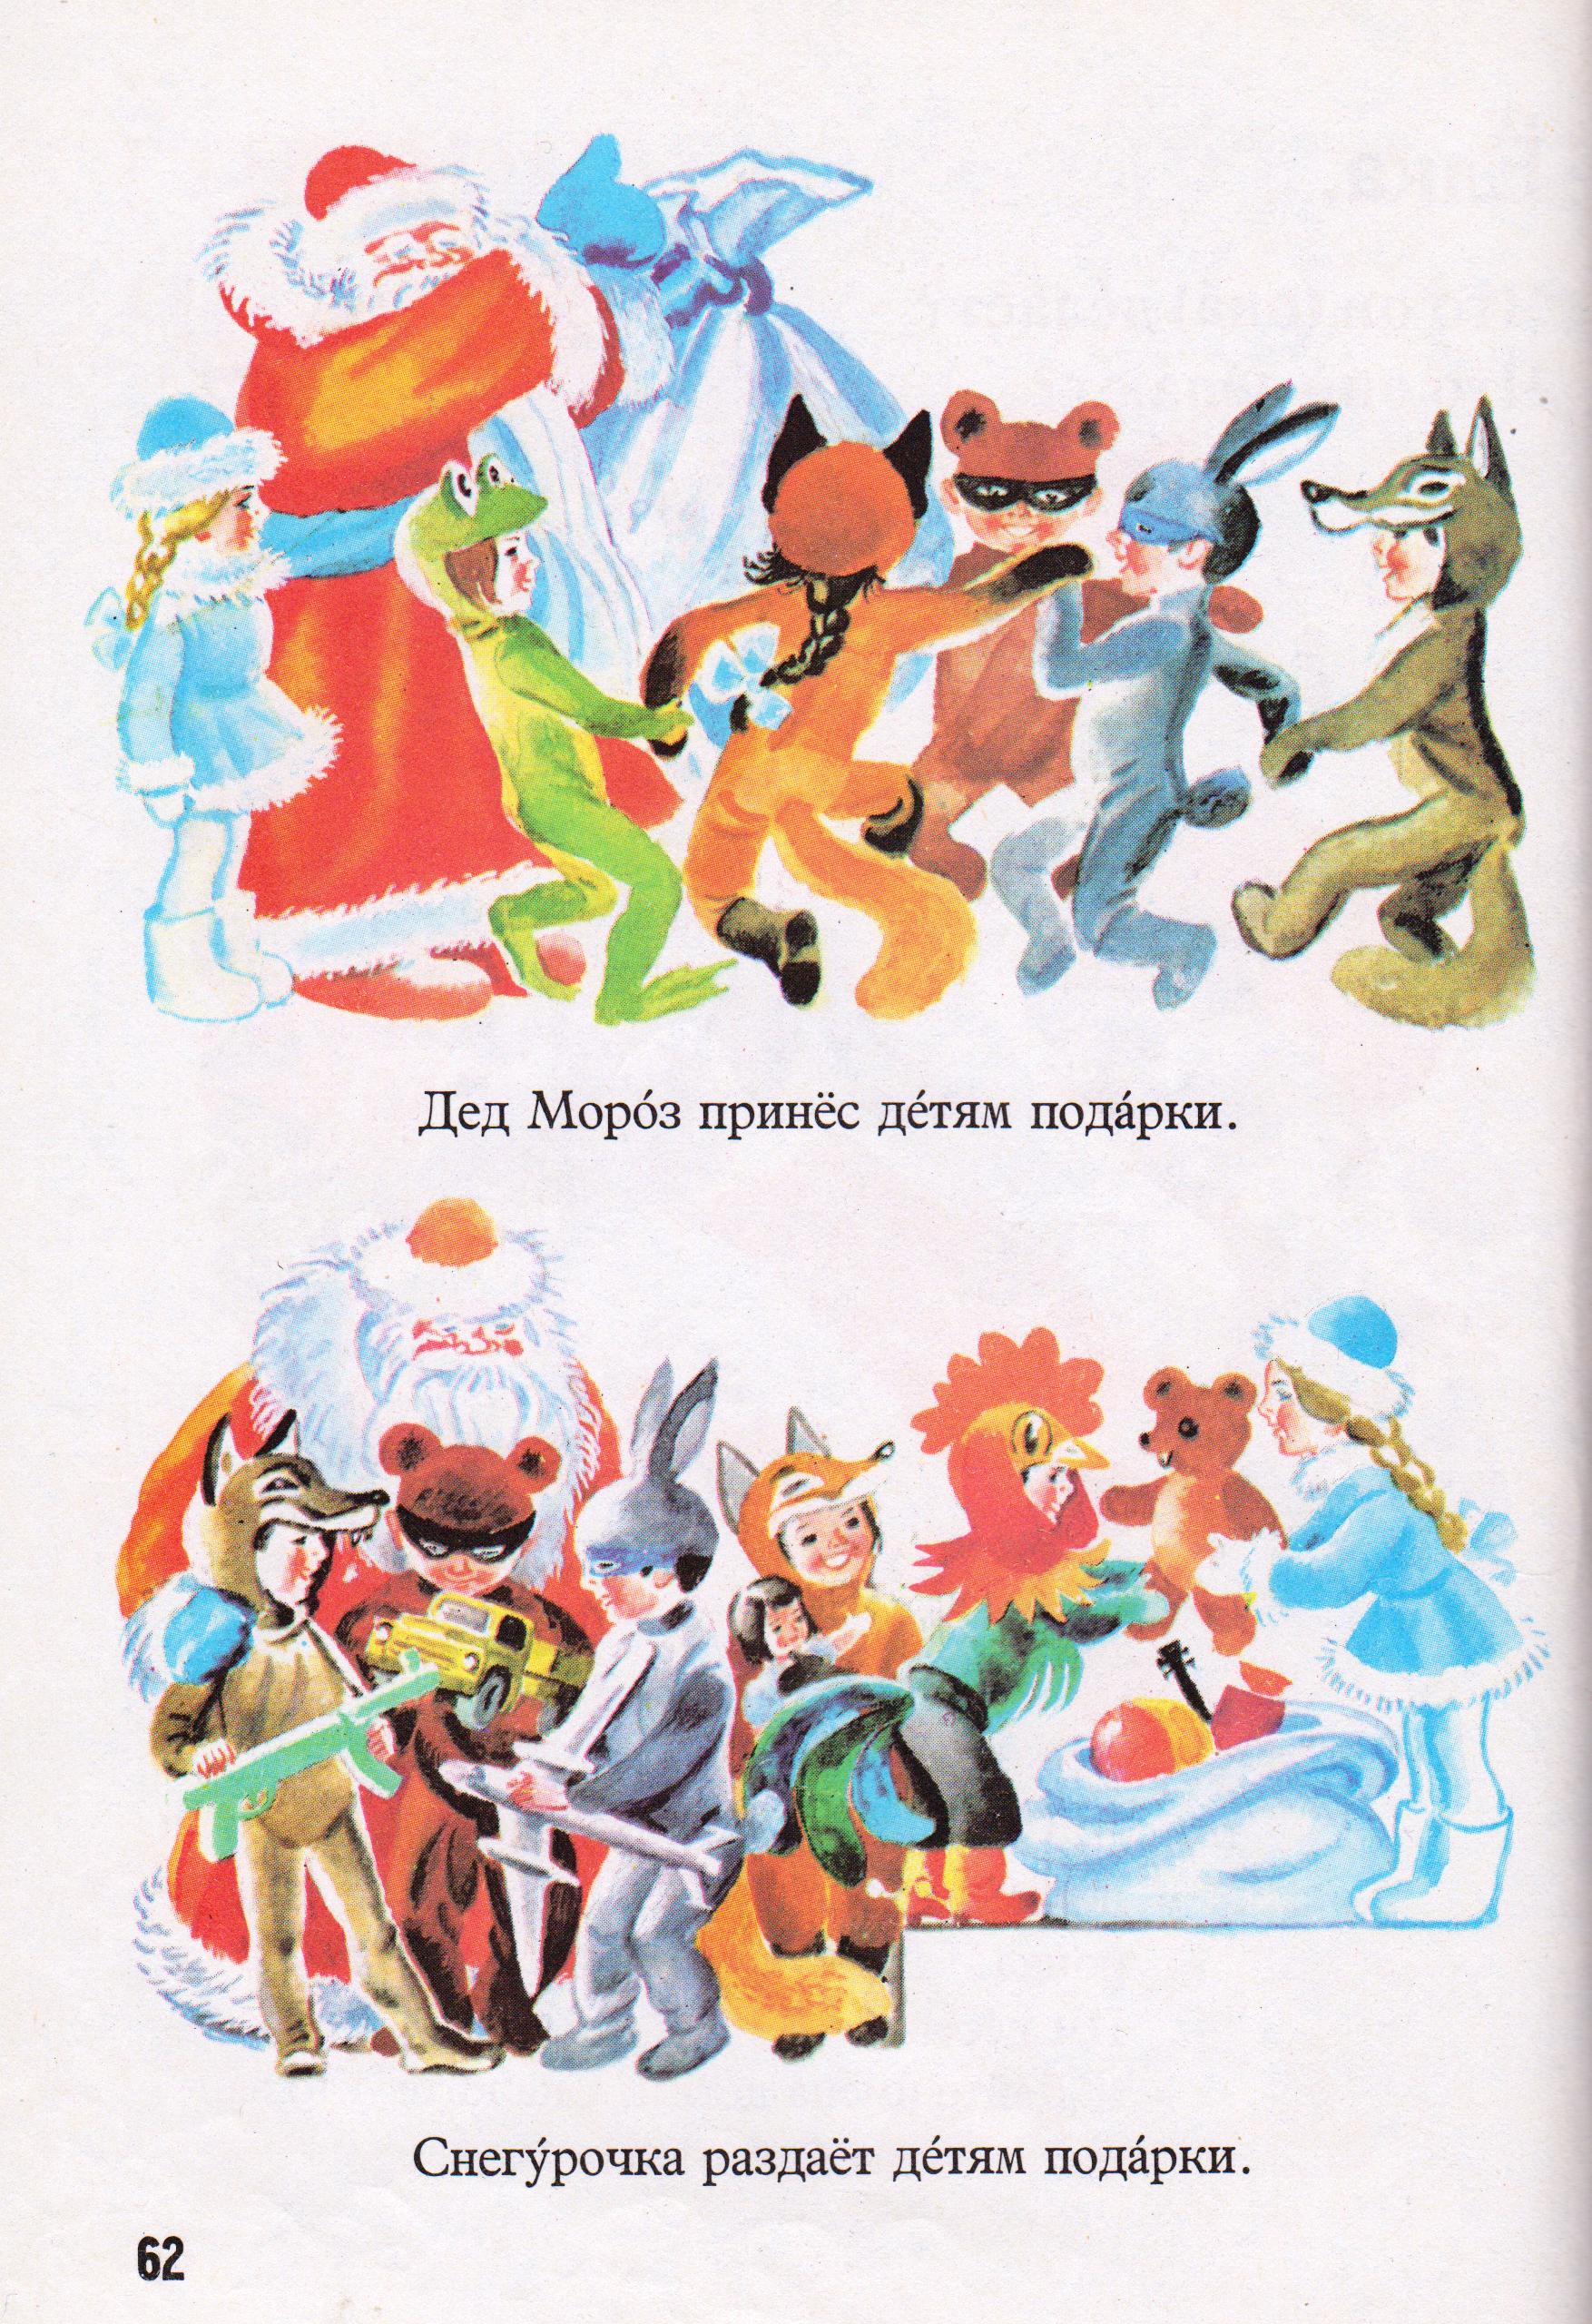 Russkiy ayzik v kartinkah-1986 (2).jpg